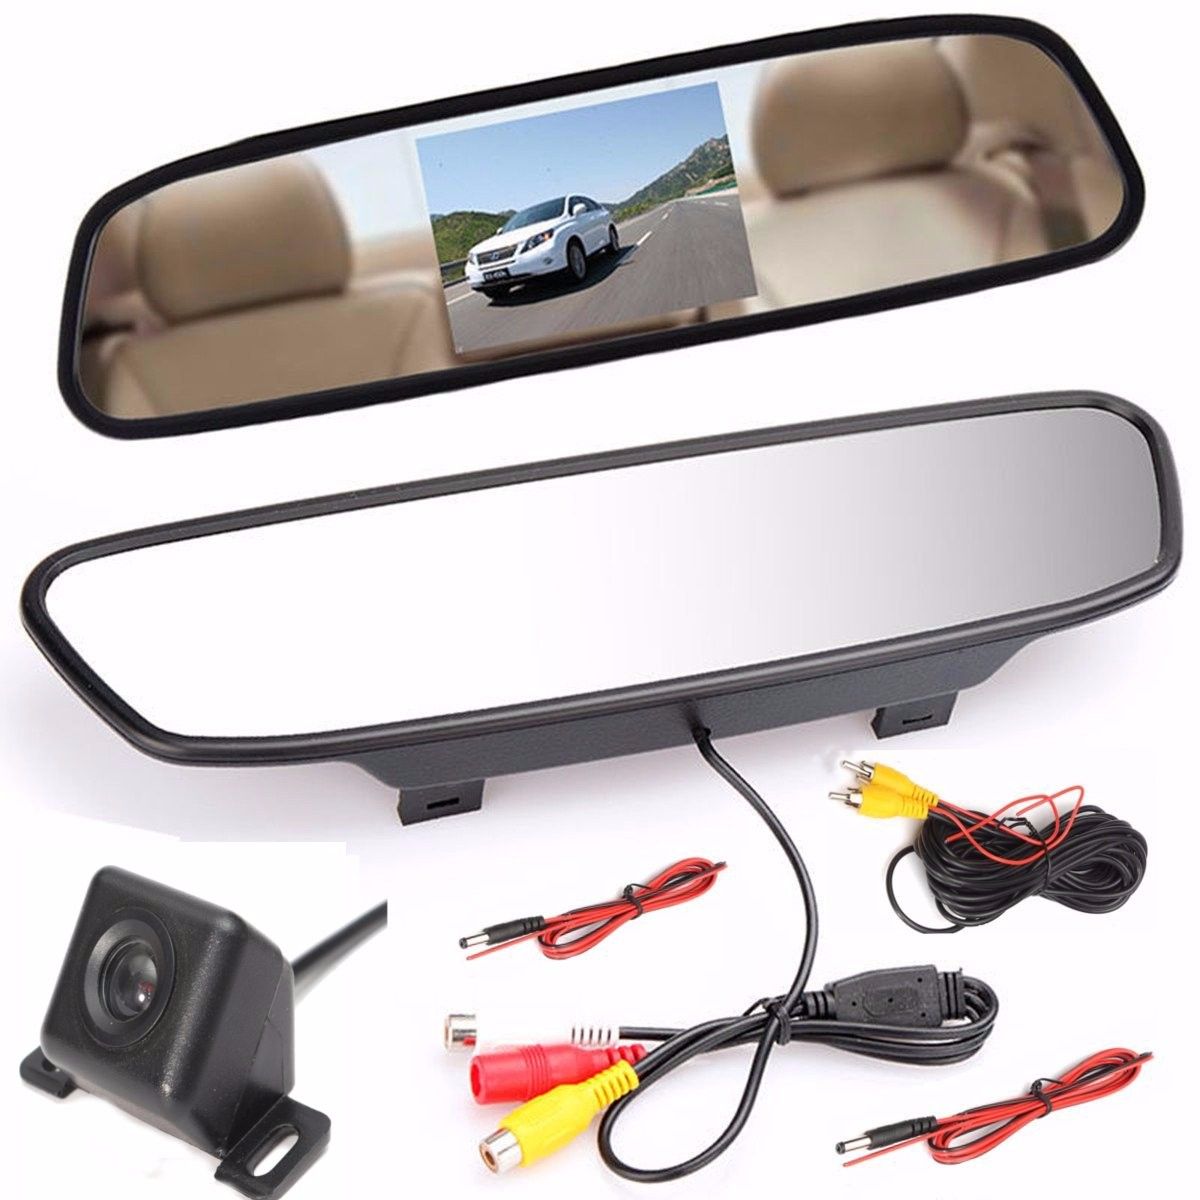 43-Inch-LCD-Monitor-Car-Rear-View-Camera-Kit-Backup-Camera-Support-Night-Vision-1393004